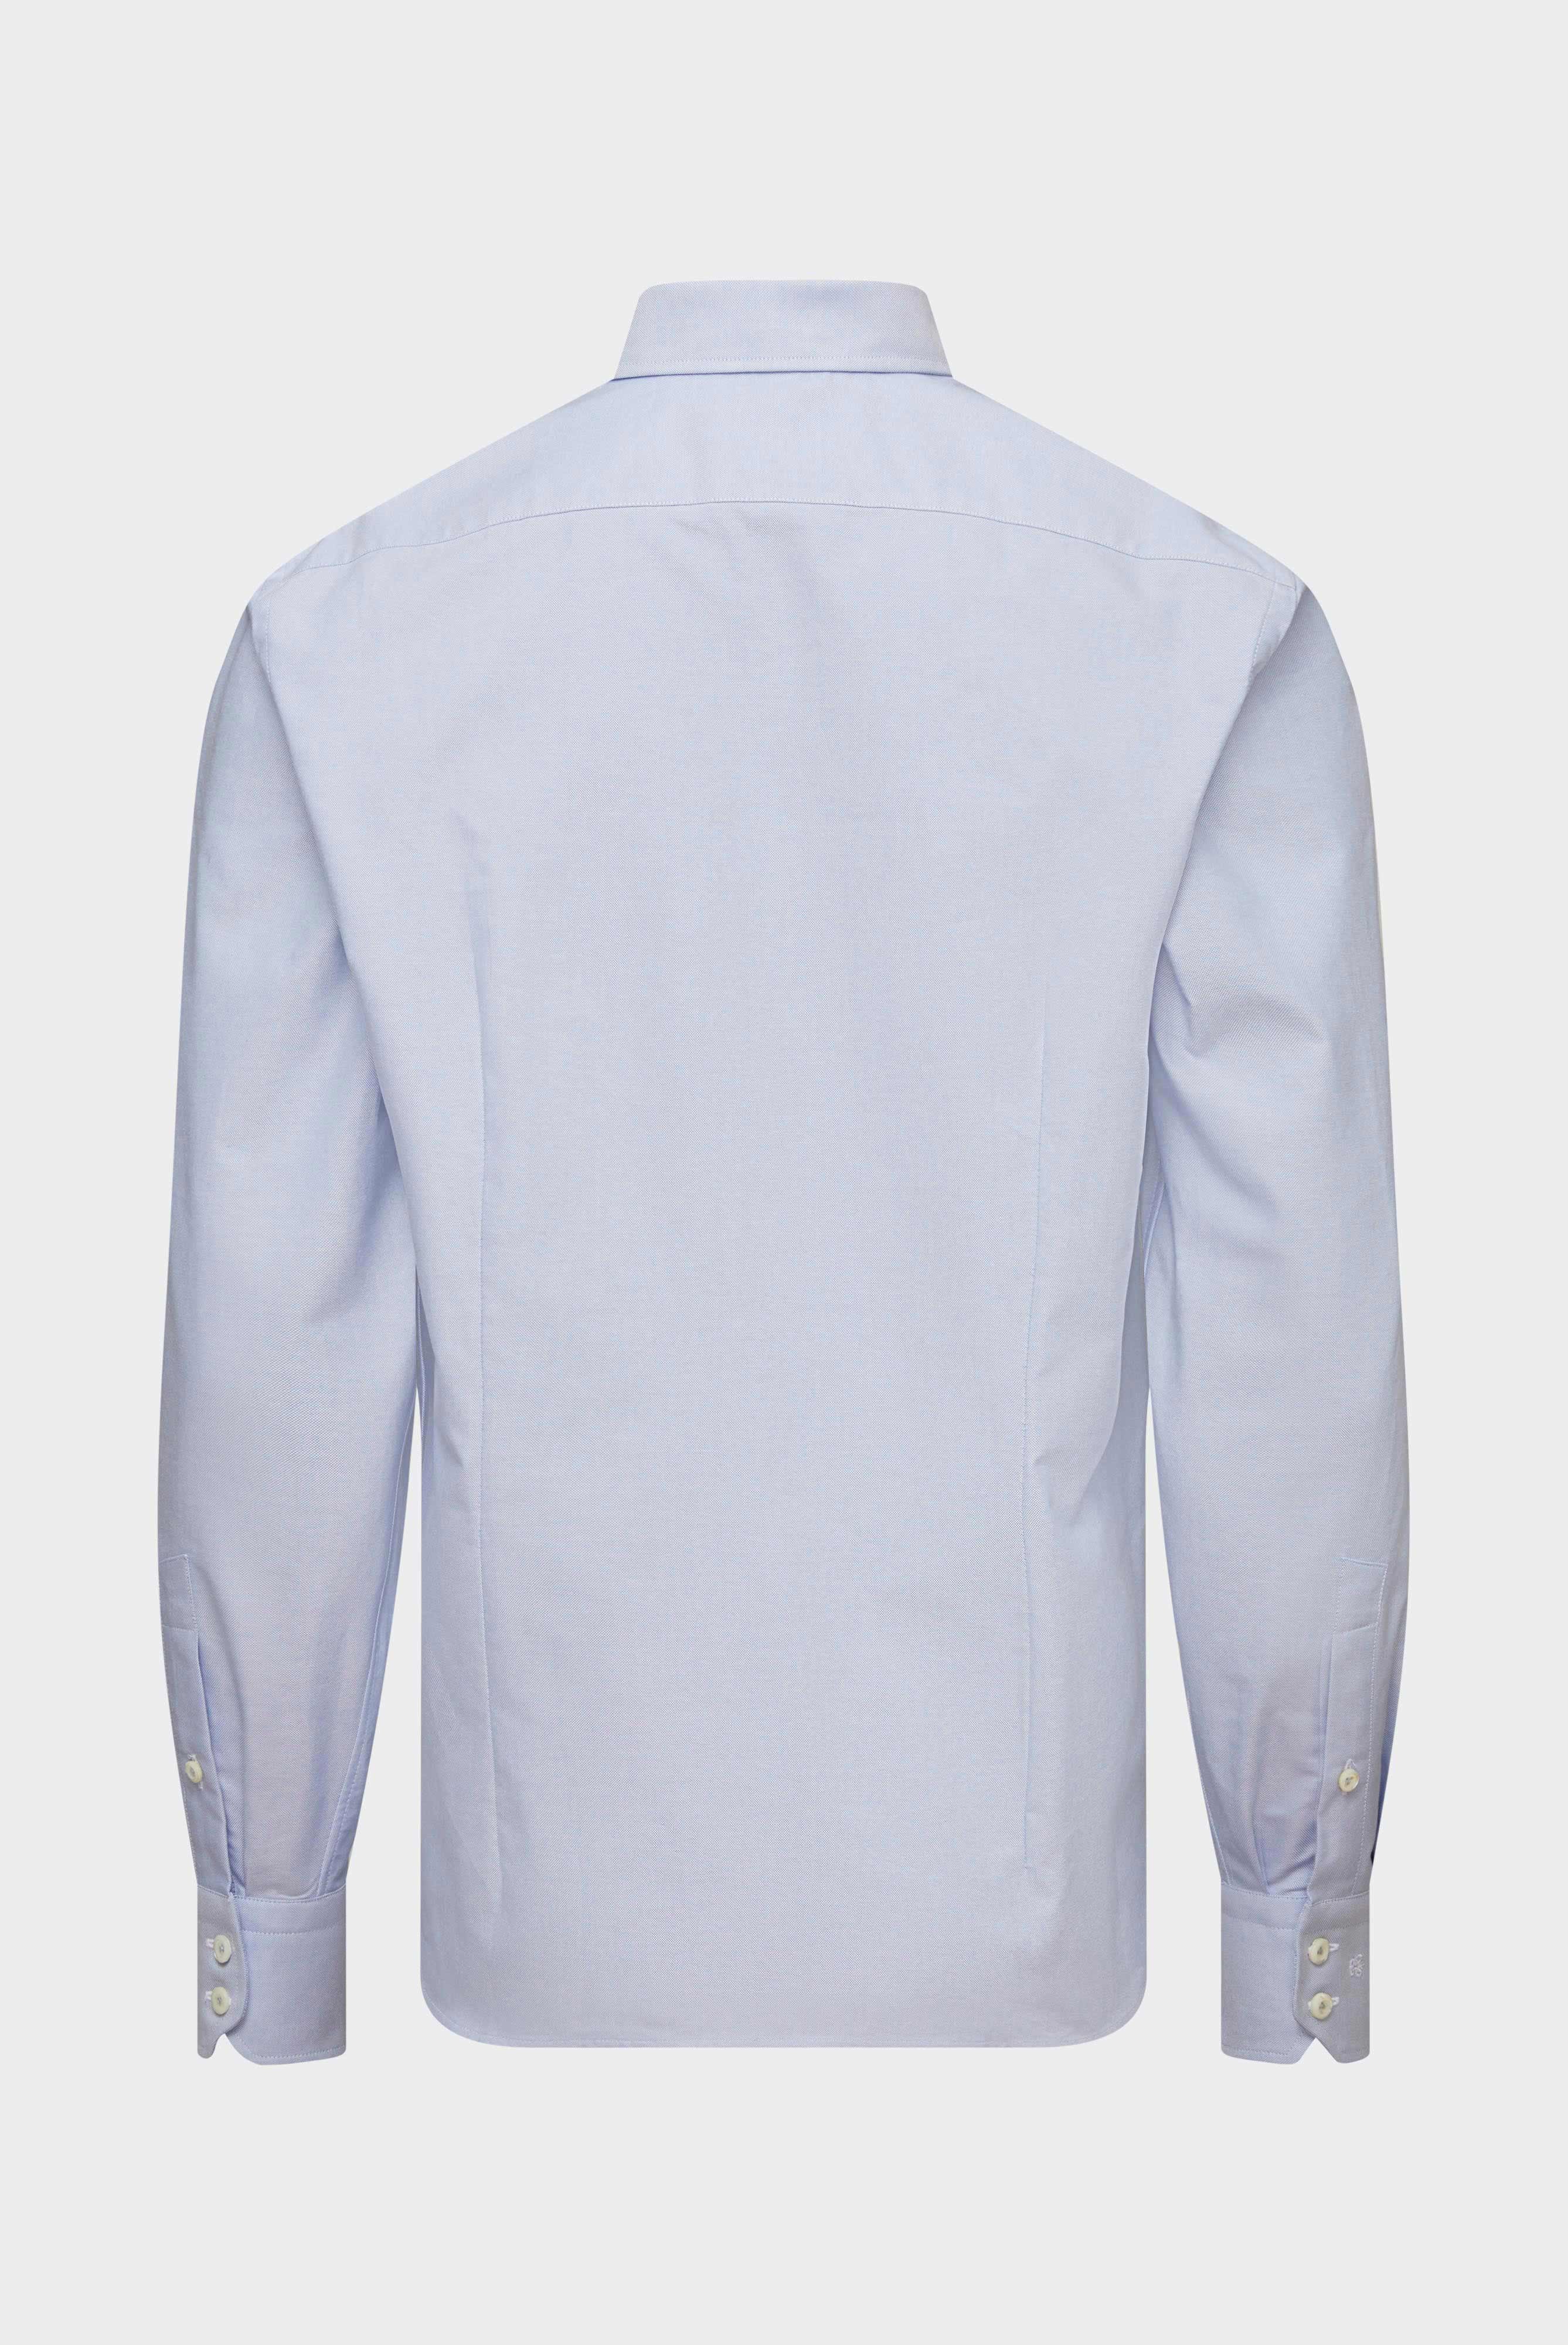 Casual Hemden+Oxfordhemd Tailor Fit+20.2013.AV.161267.730.37